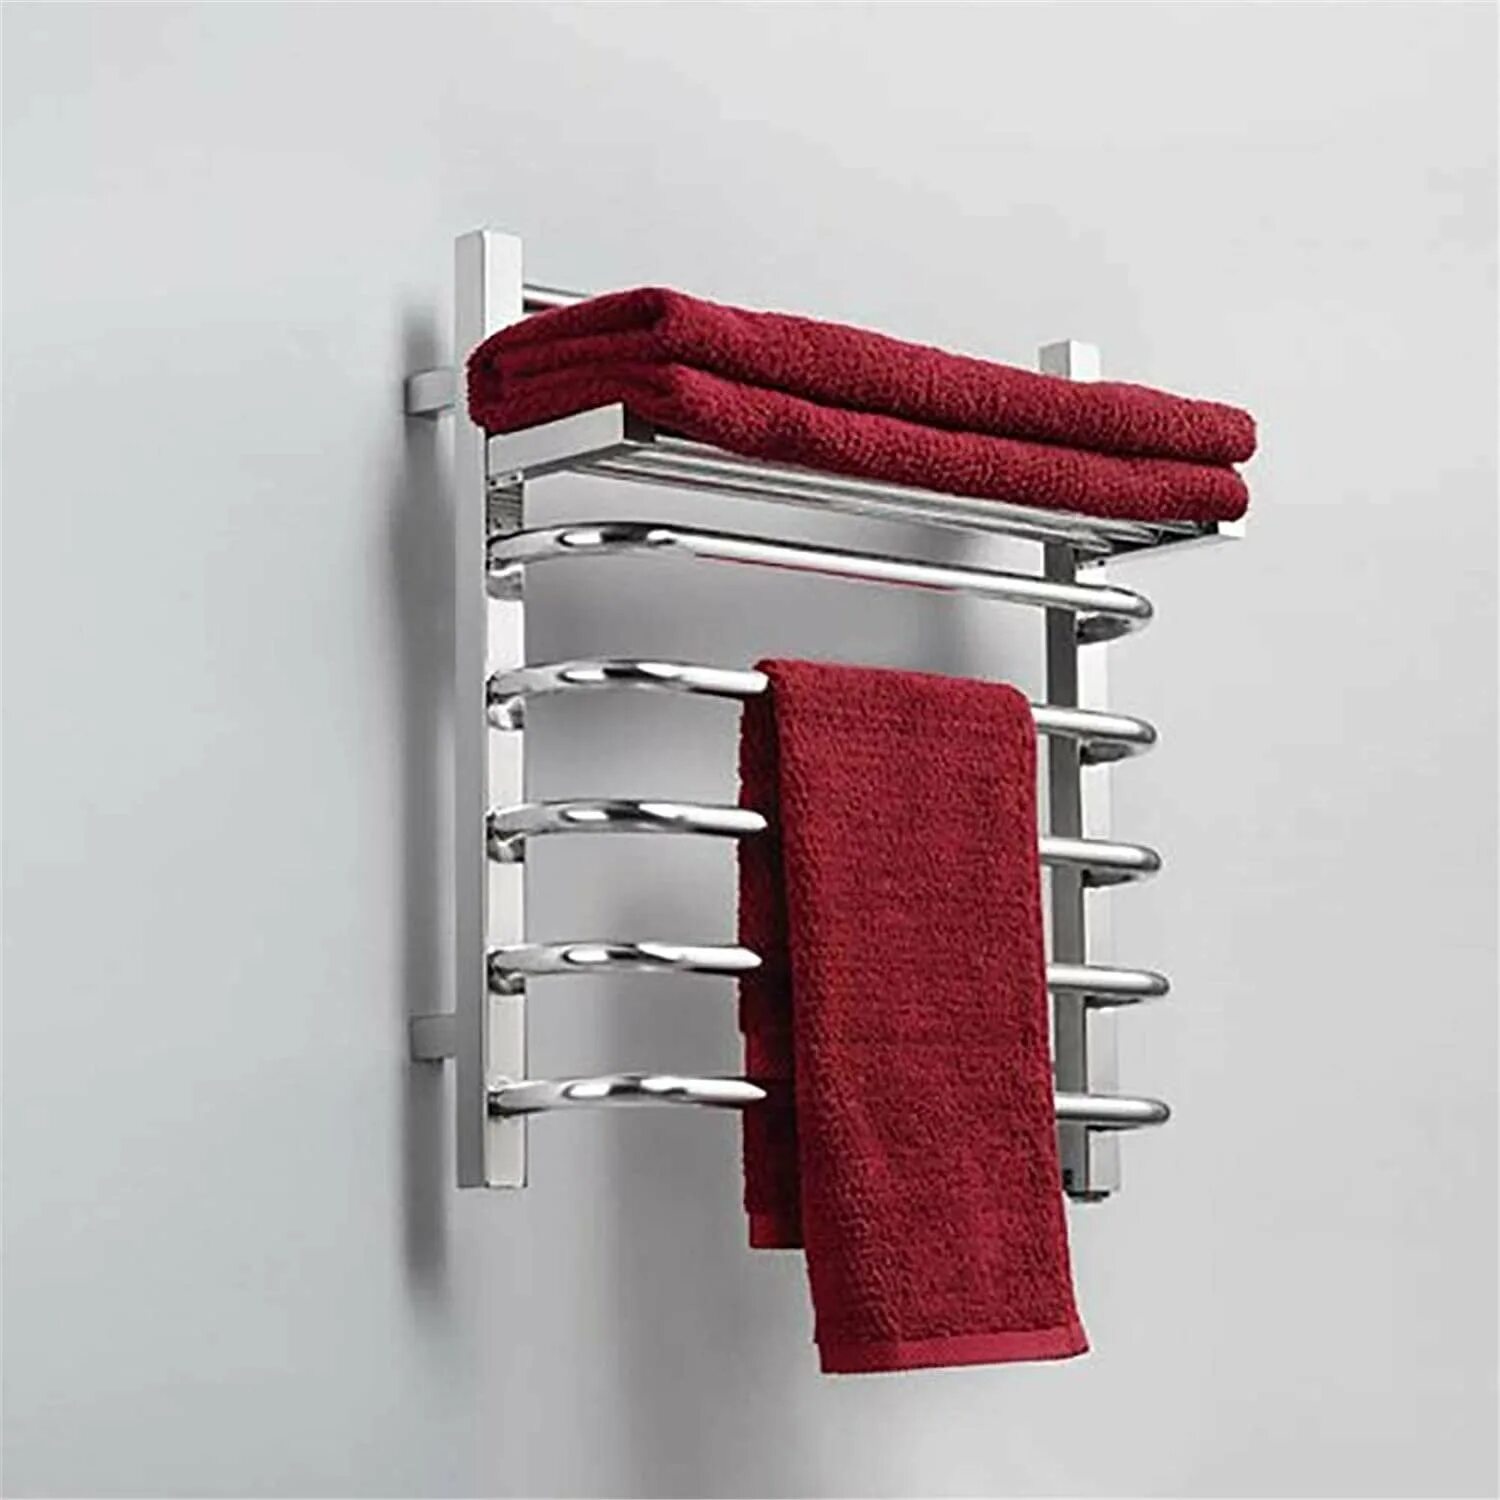 Штука для полотенец. Сушилка Towel Warmer. Сушилка для белья Stainless Steel Towel Rack. Полотенца сушители 50/80. Сушилка для полотенец в ванную.